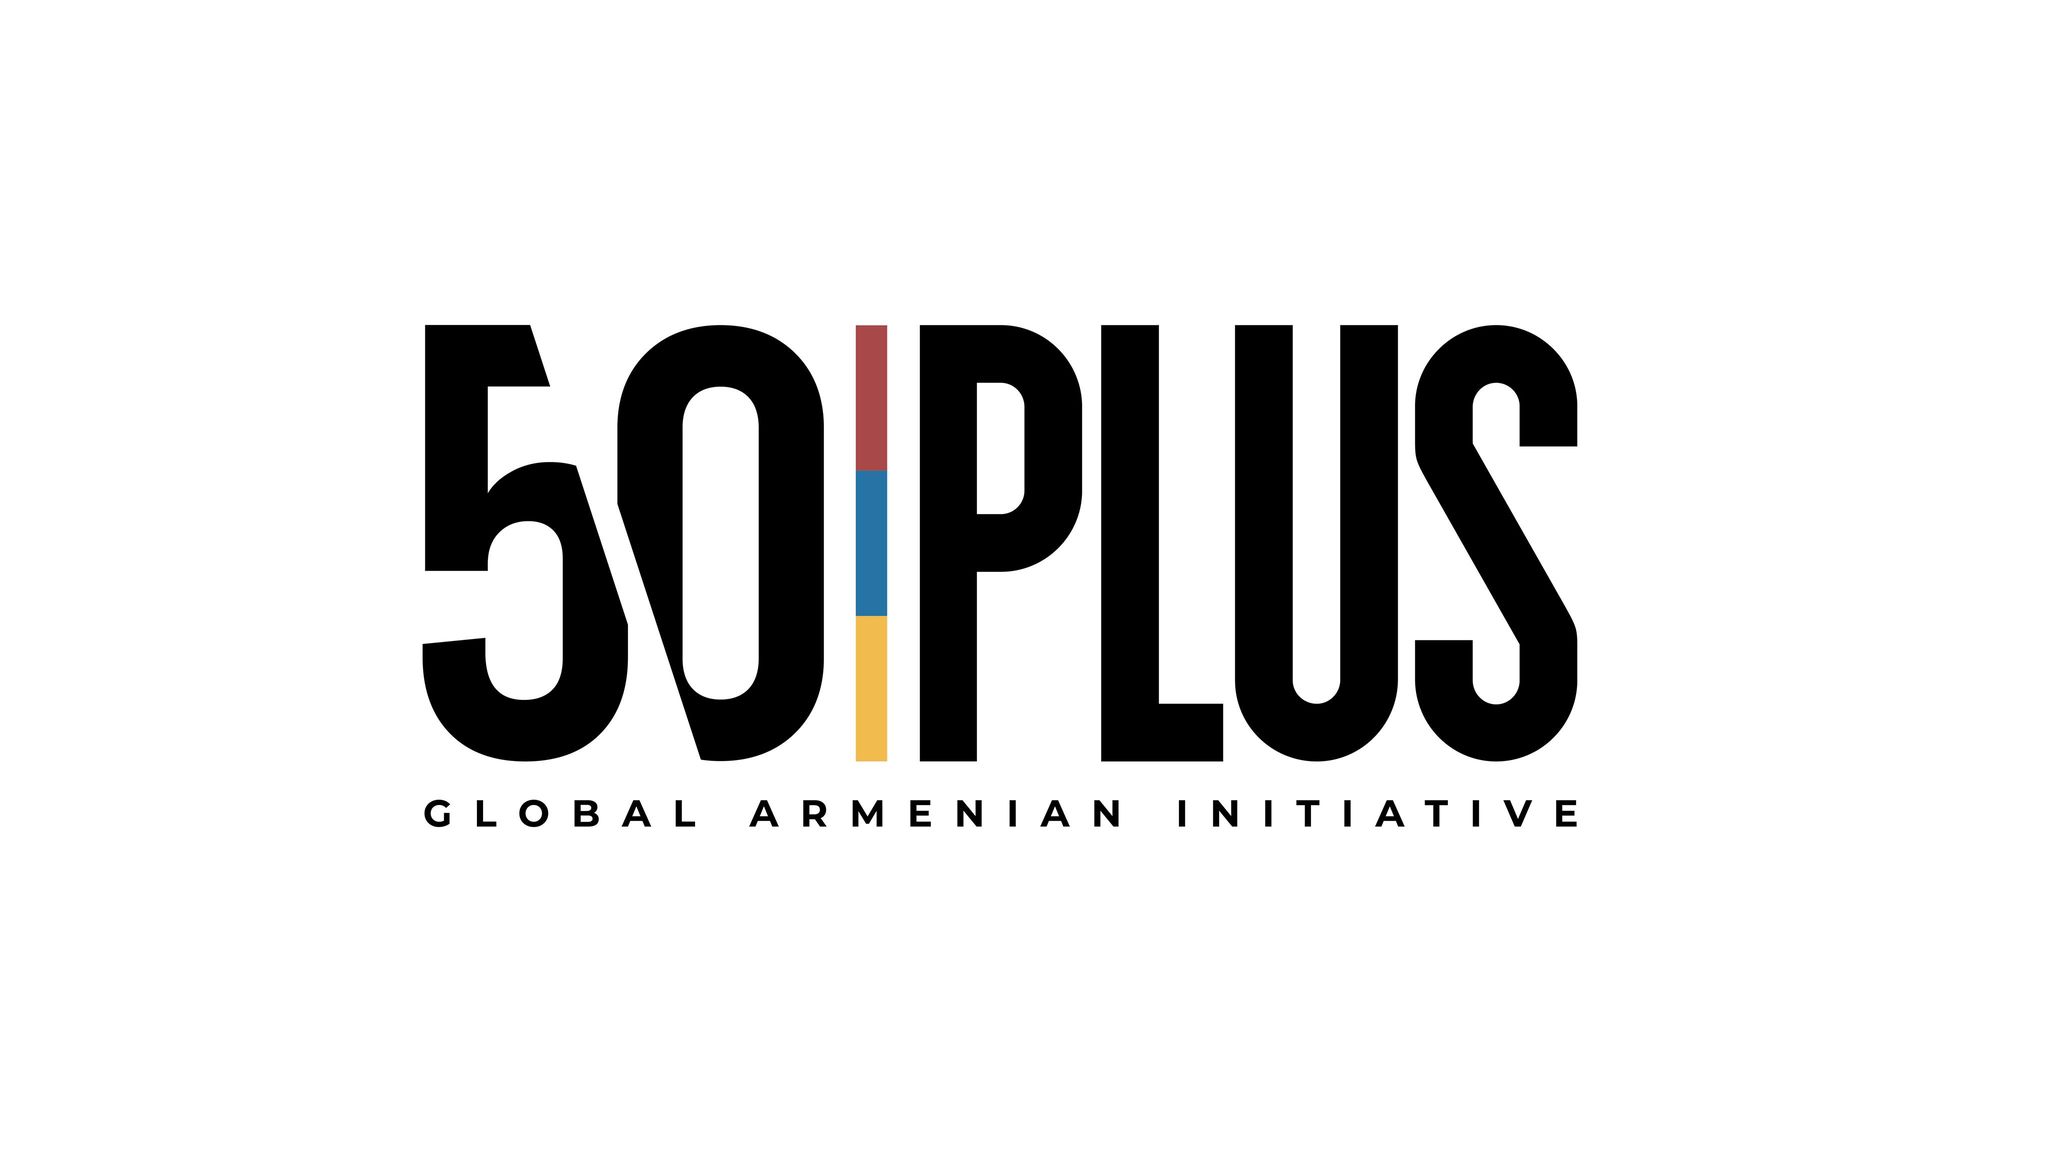 Initiative Globale "50 Plus" 